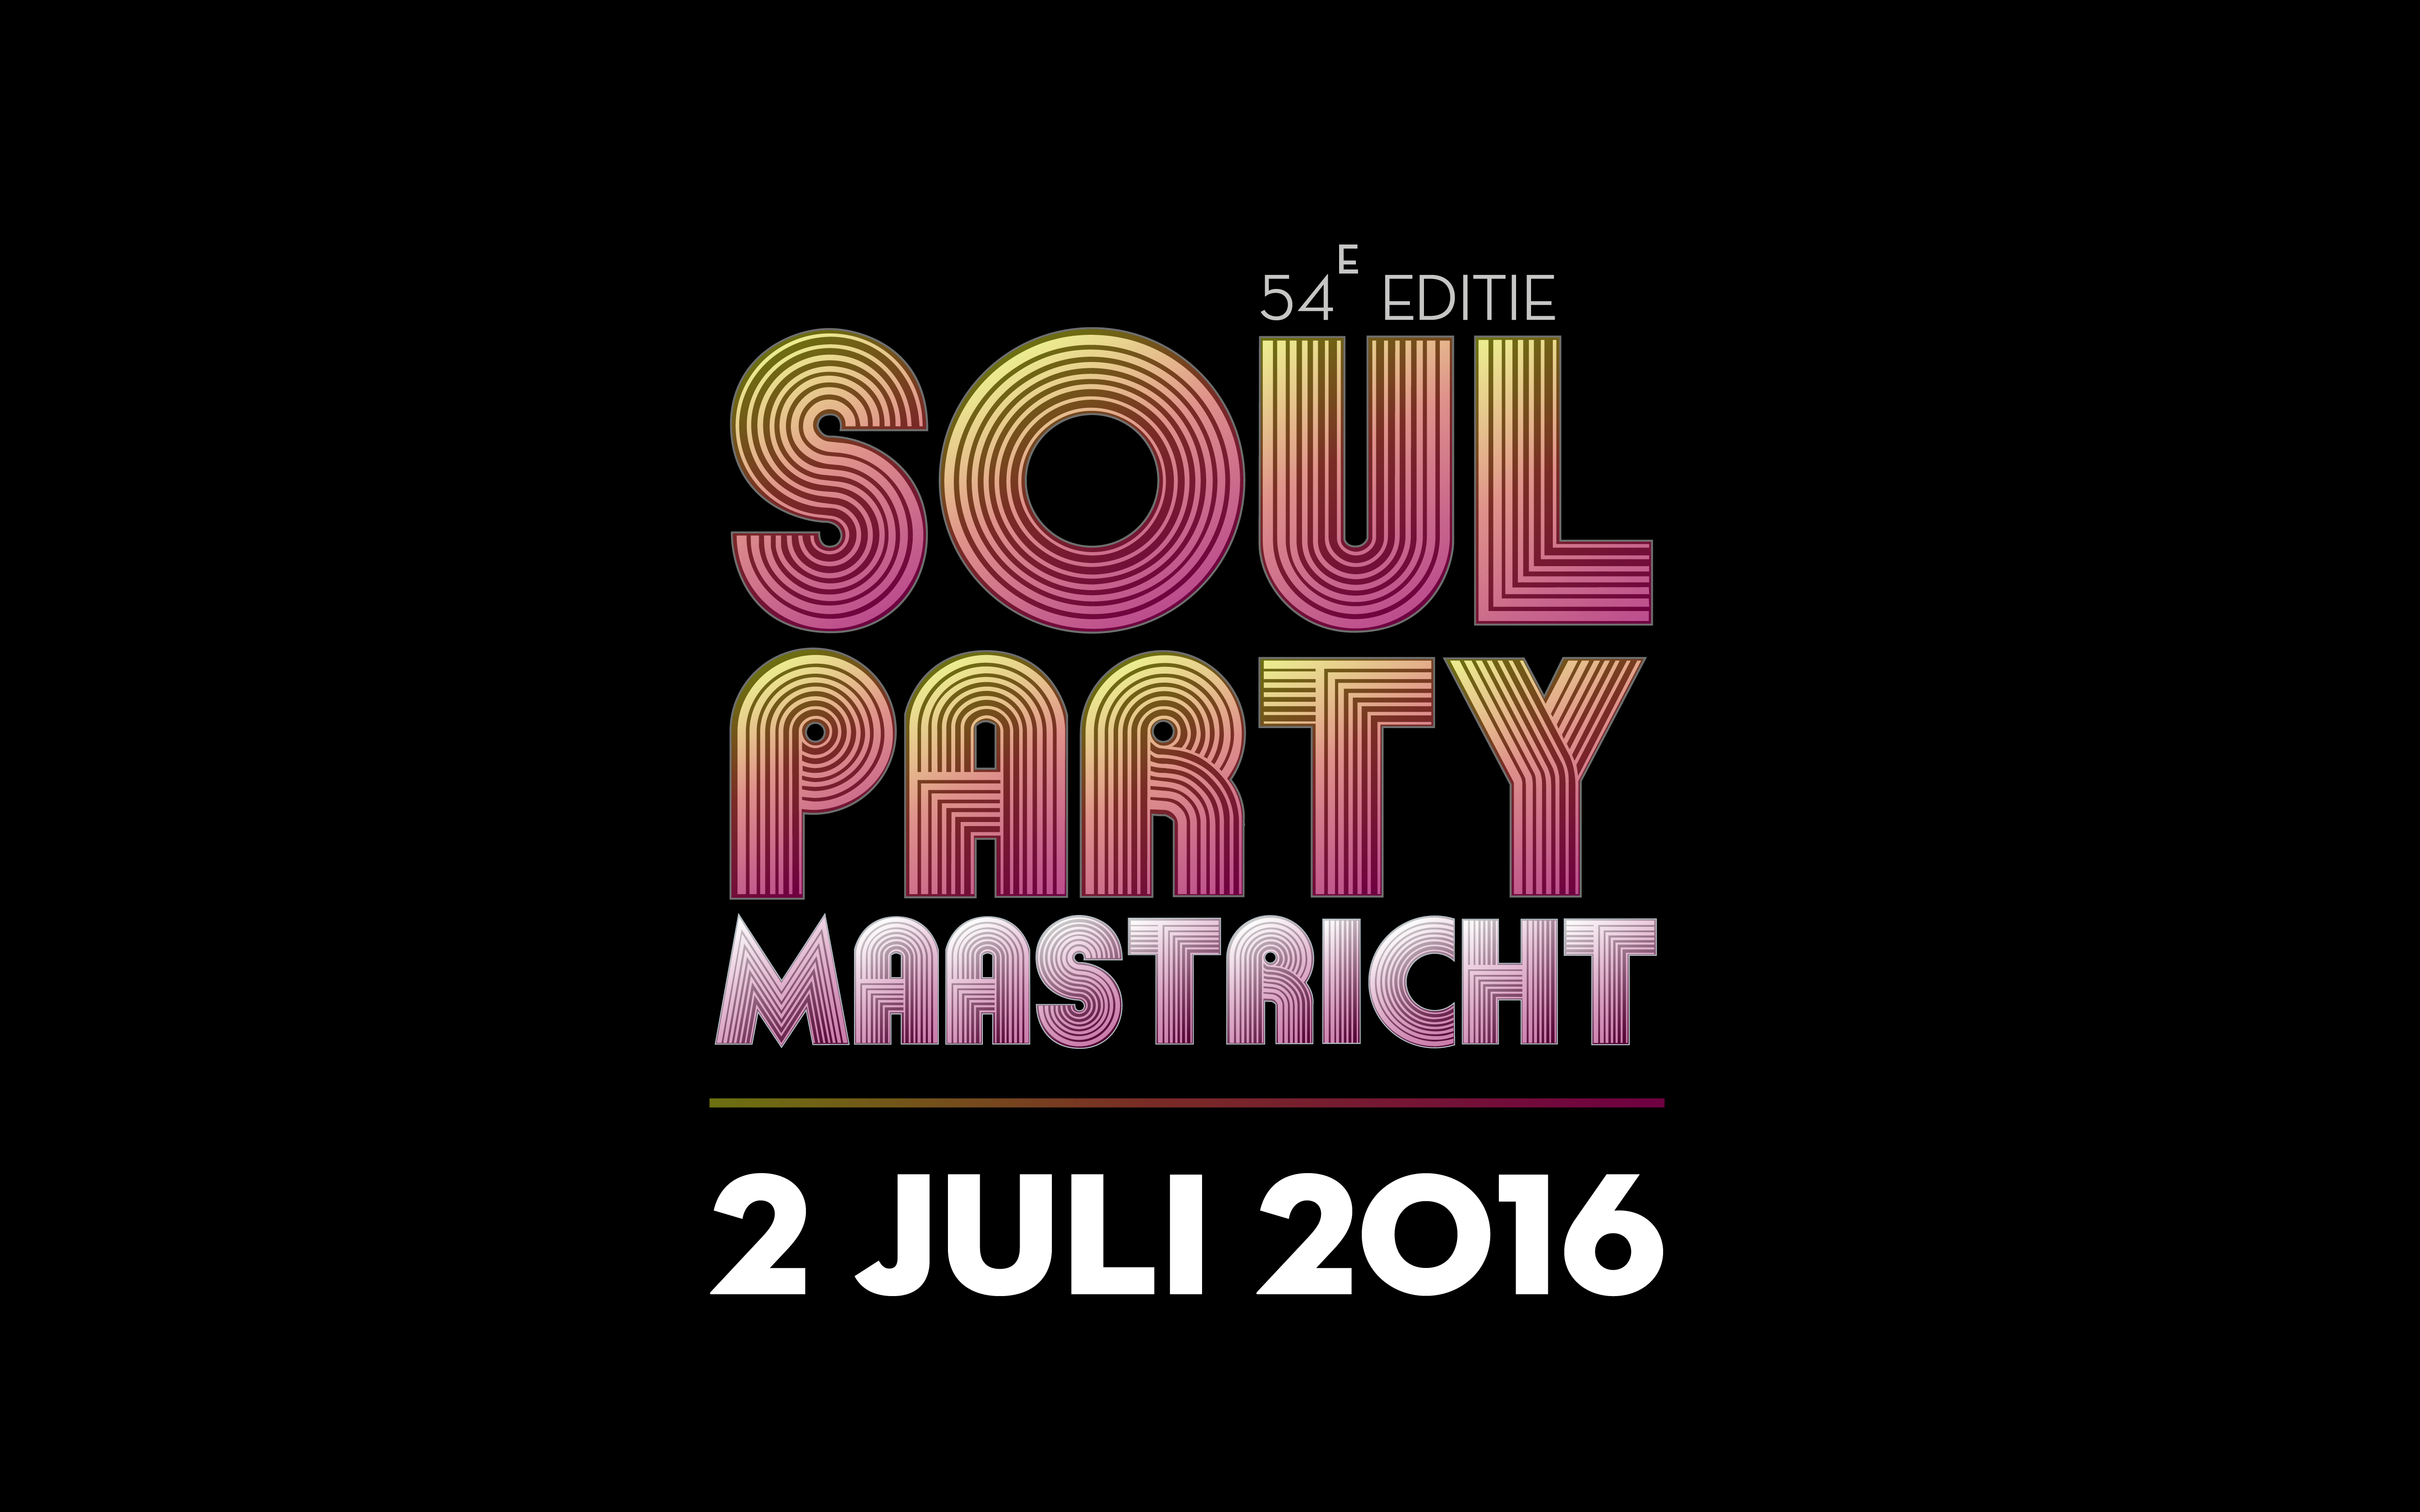 Soulparty 2 juli 2016